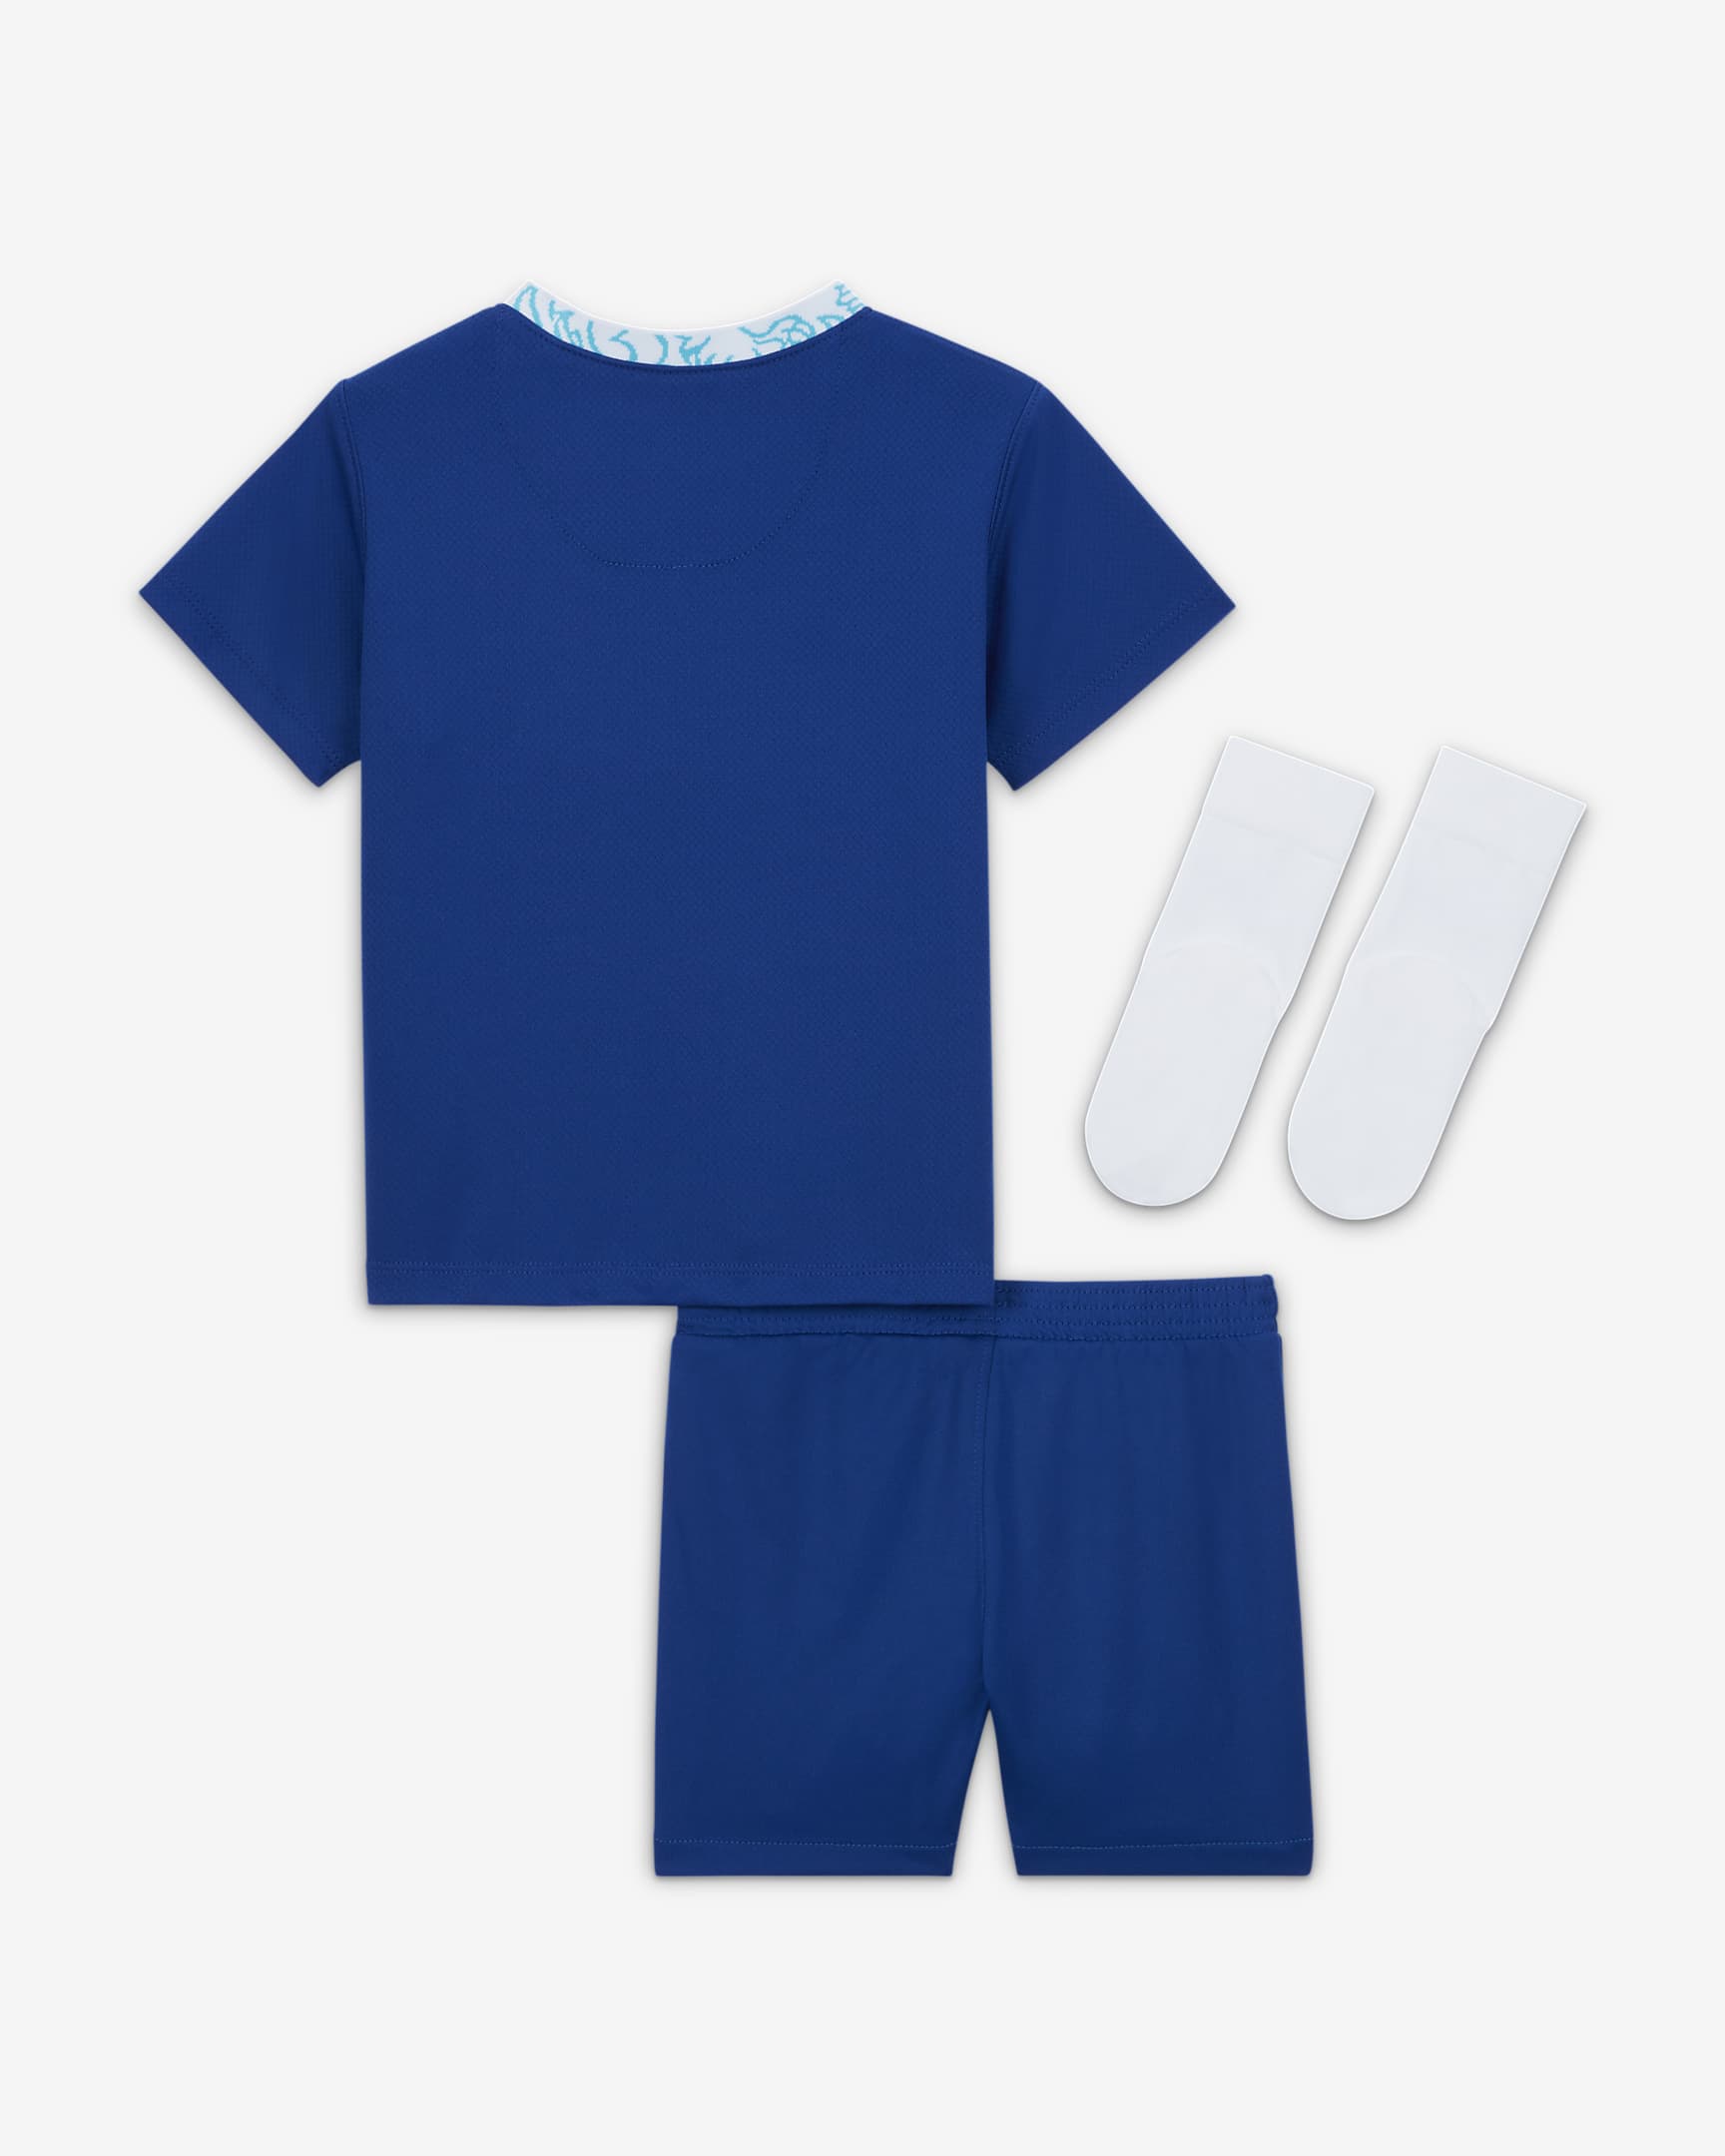 Chelsea F.C. 2022/23 Home Baby Football Kit. Nike BG